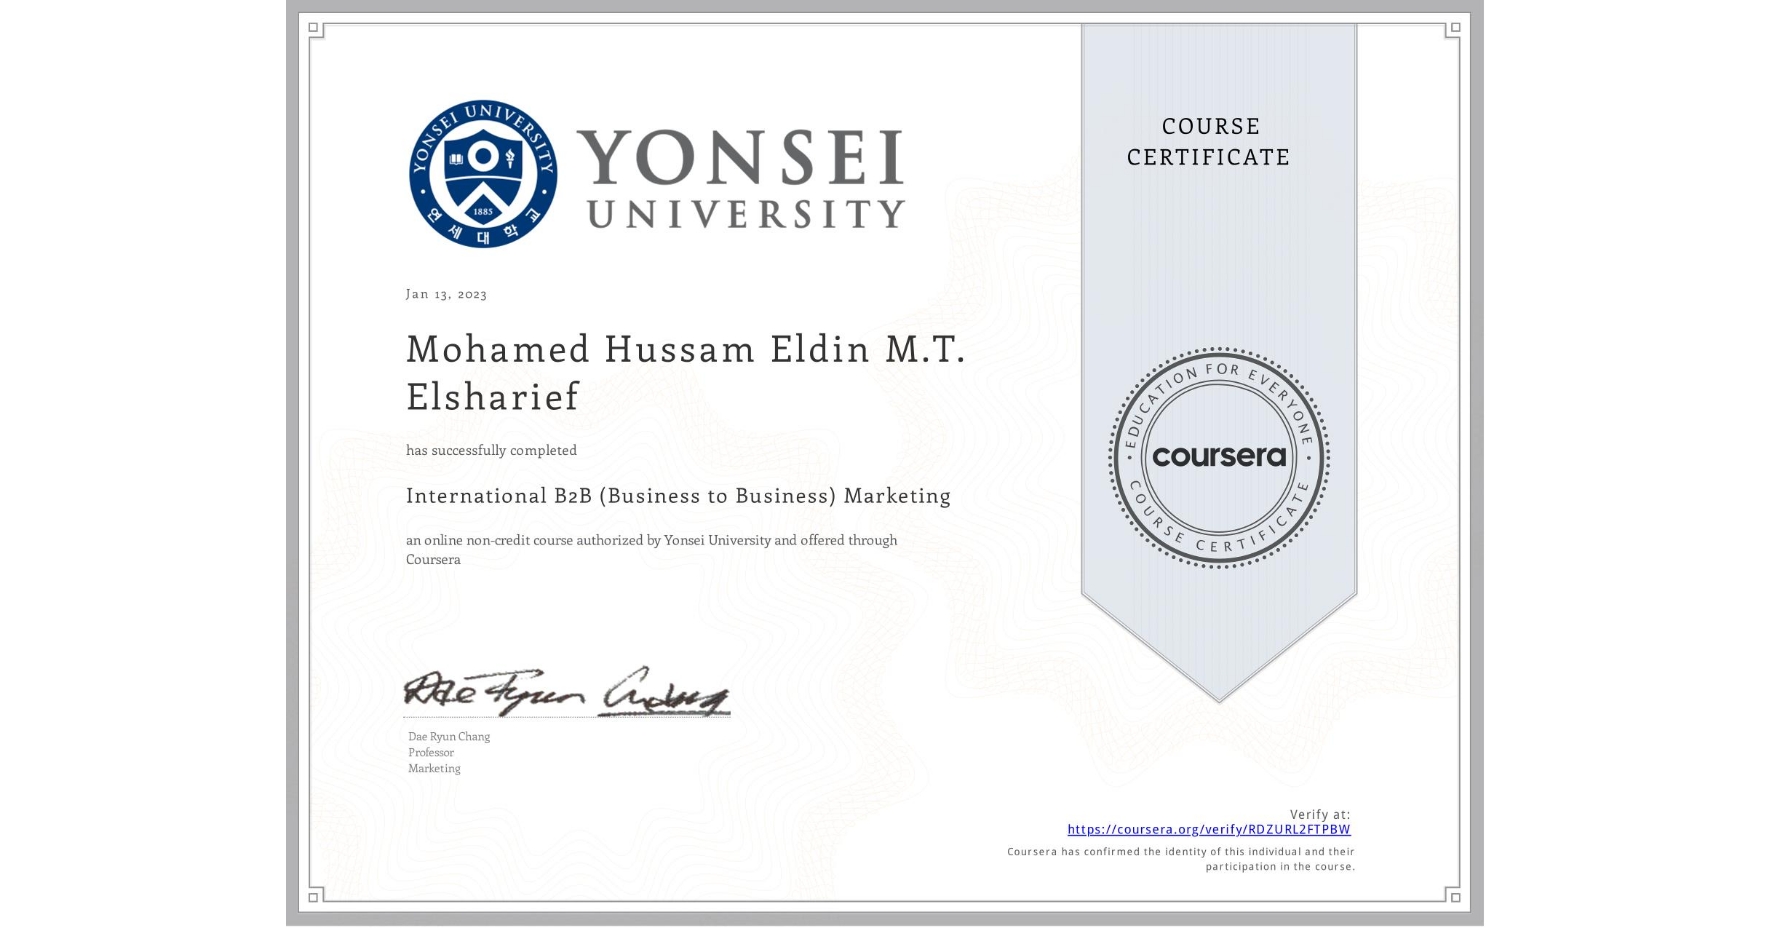 MohamedSharief's B2B Certificate